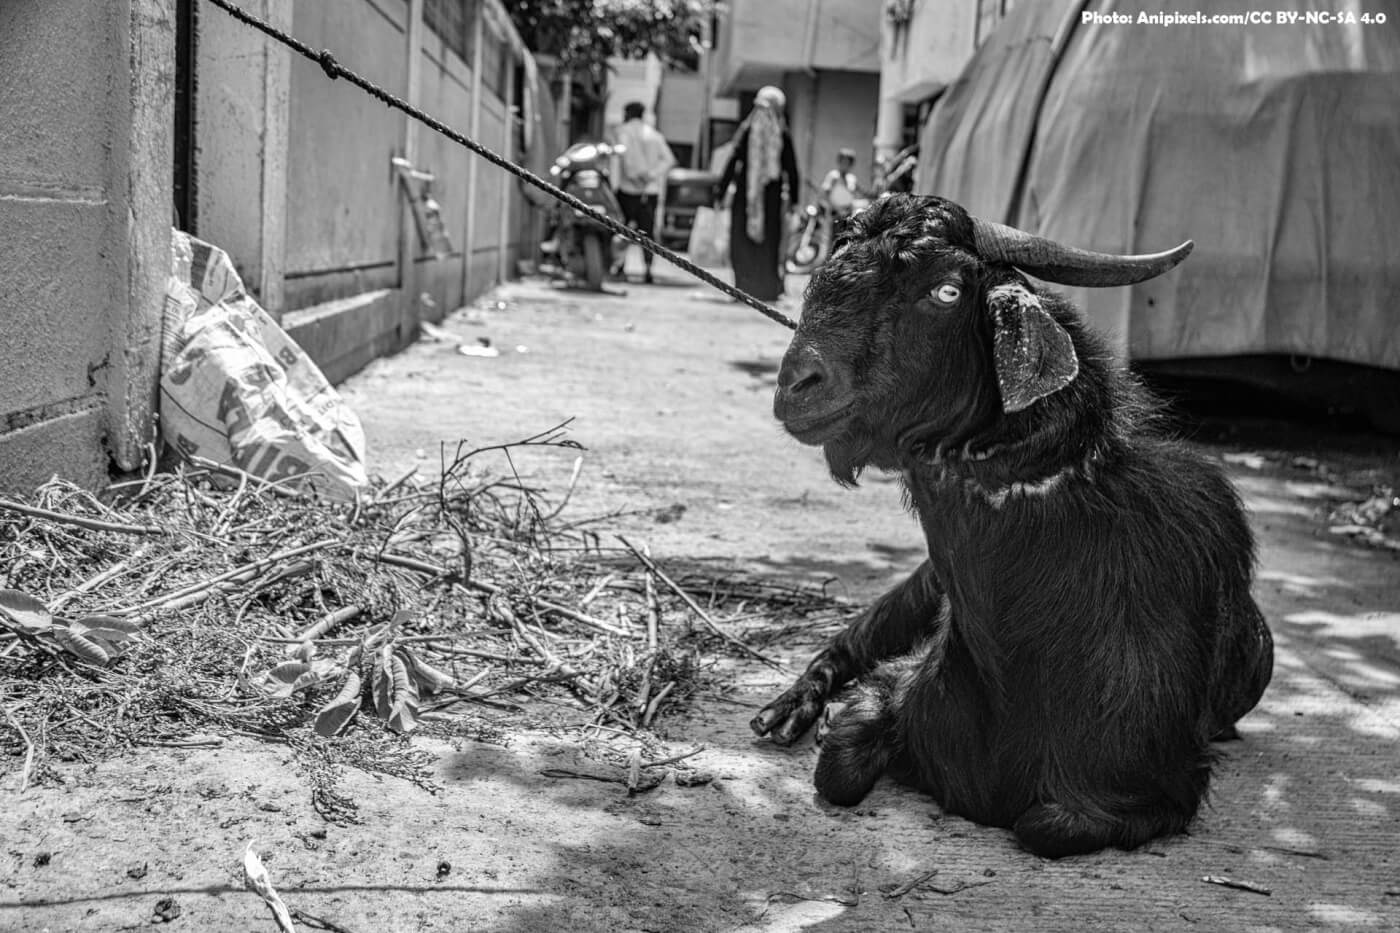 PETA इंडिया के अनुरोध पर एनिमल वेलफेयर बोर्ड ने ईद अल-अज़हा से पहले जानवरों के प्रति क्रूरता को रोकने हेतु नई एडवाइजरी ज़ारी की